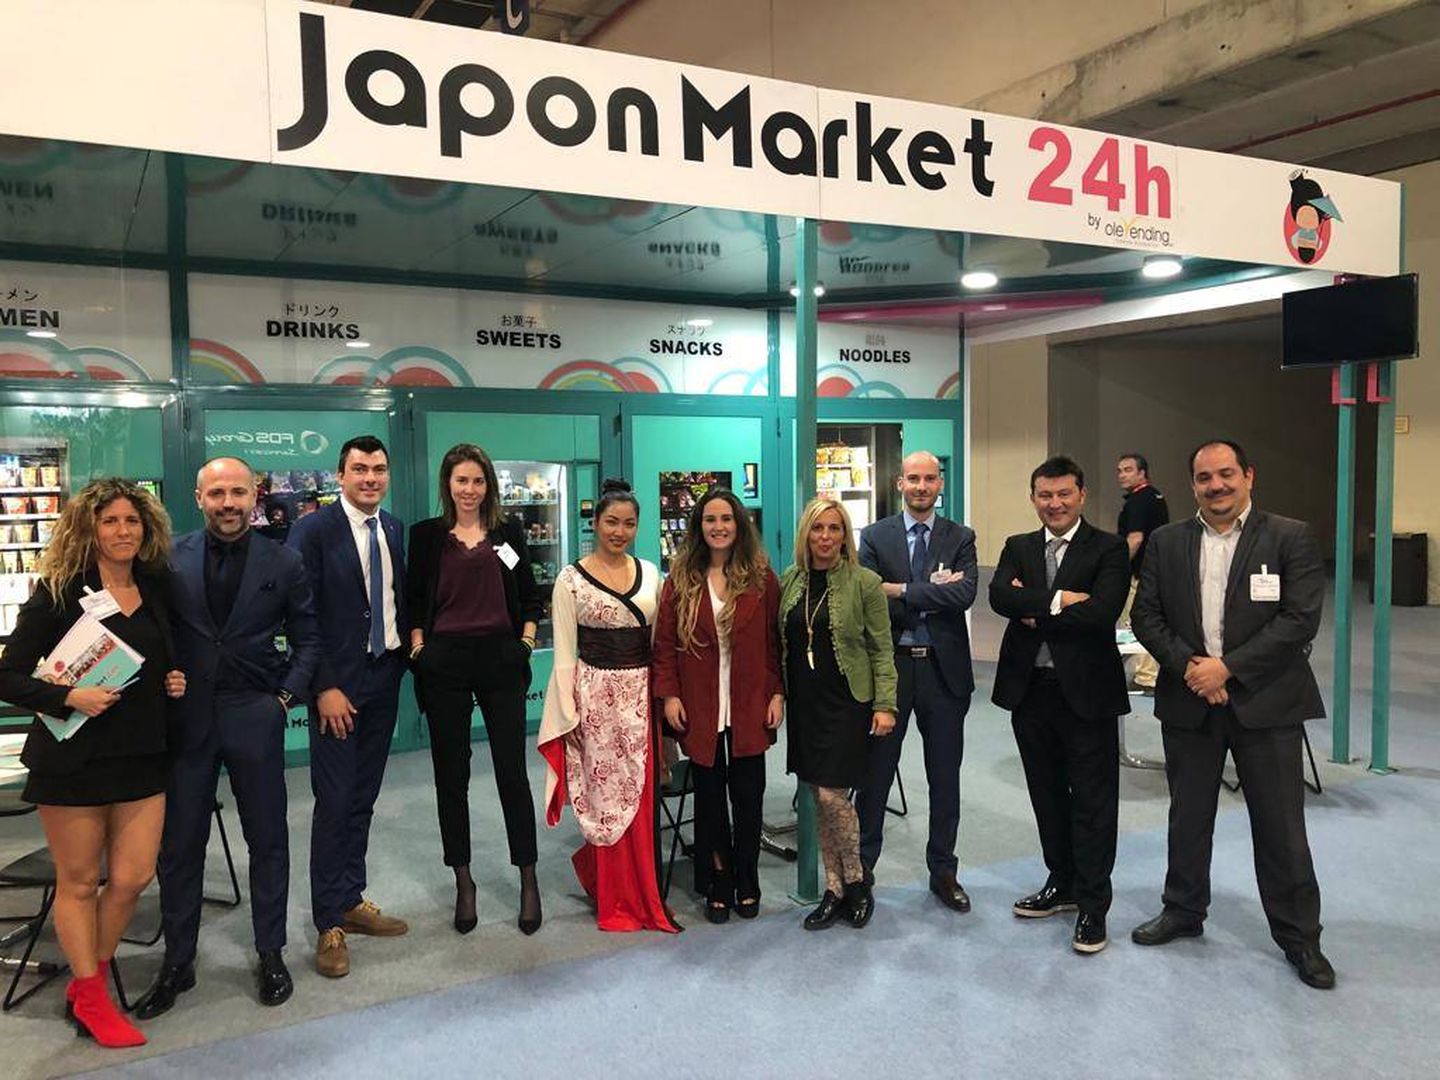 Los directivos de Olevending presentando JaponMarket24h en una feria del sector. (Imagen cedida)